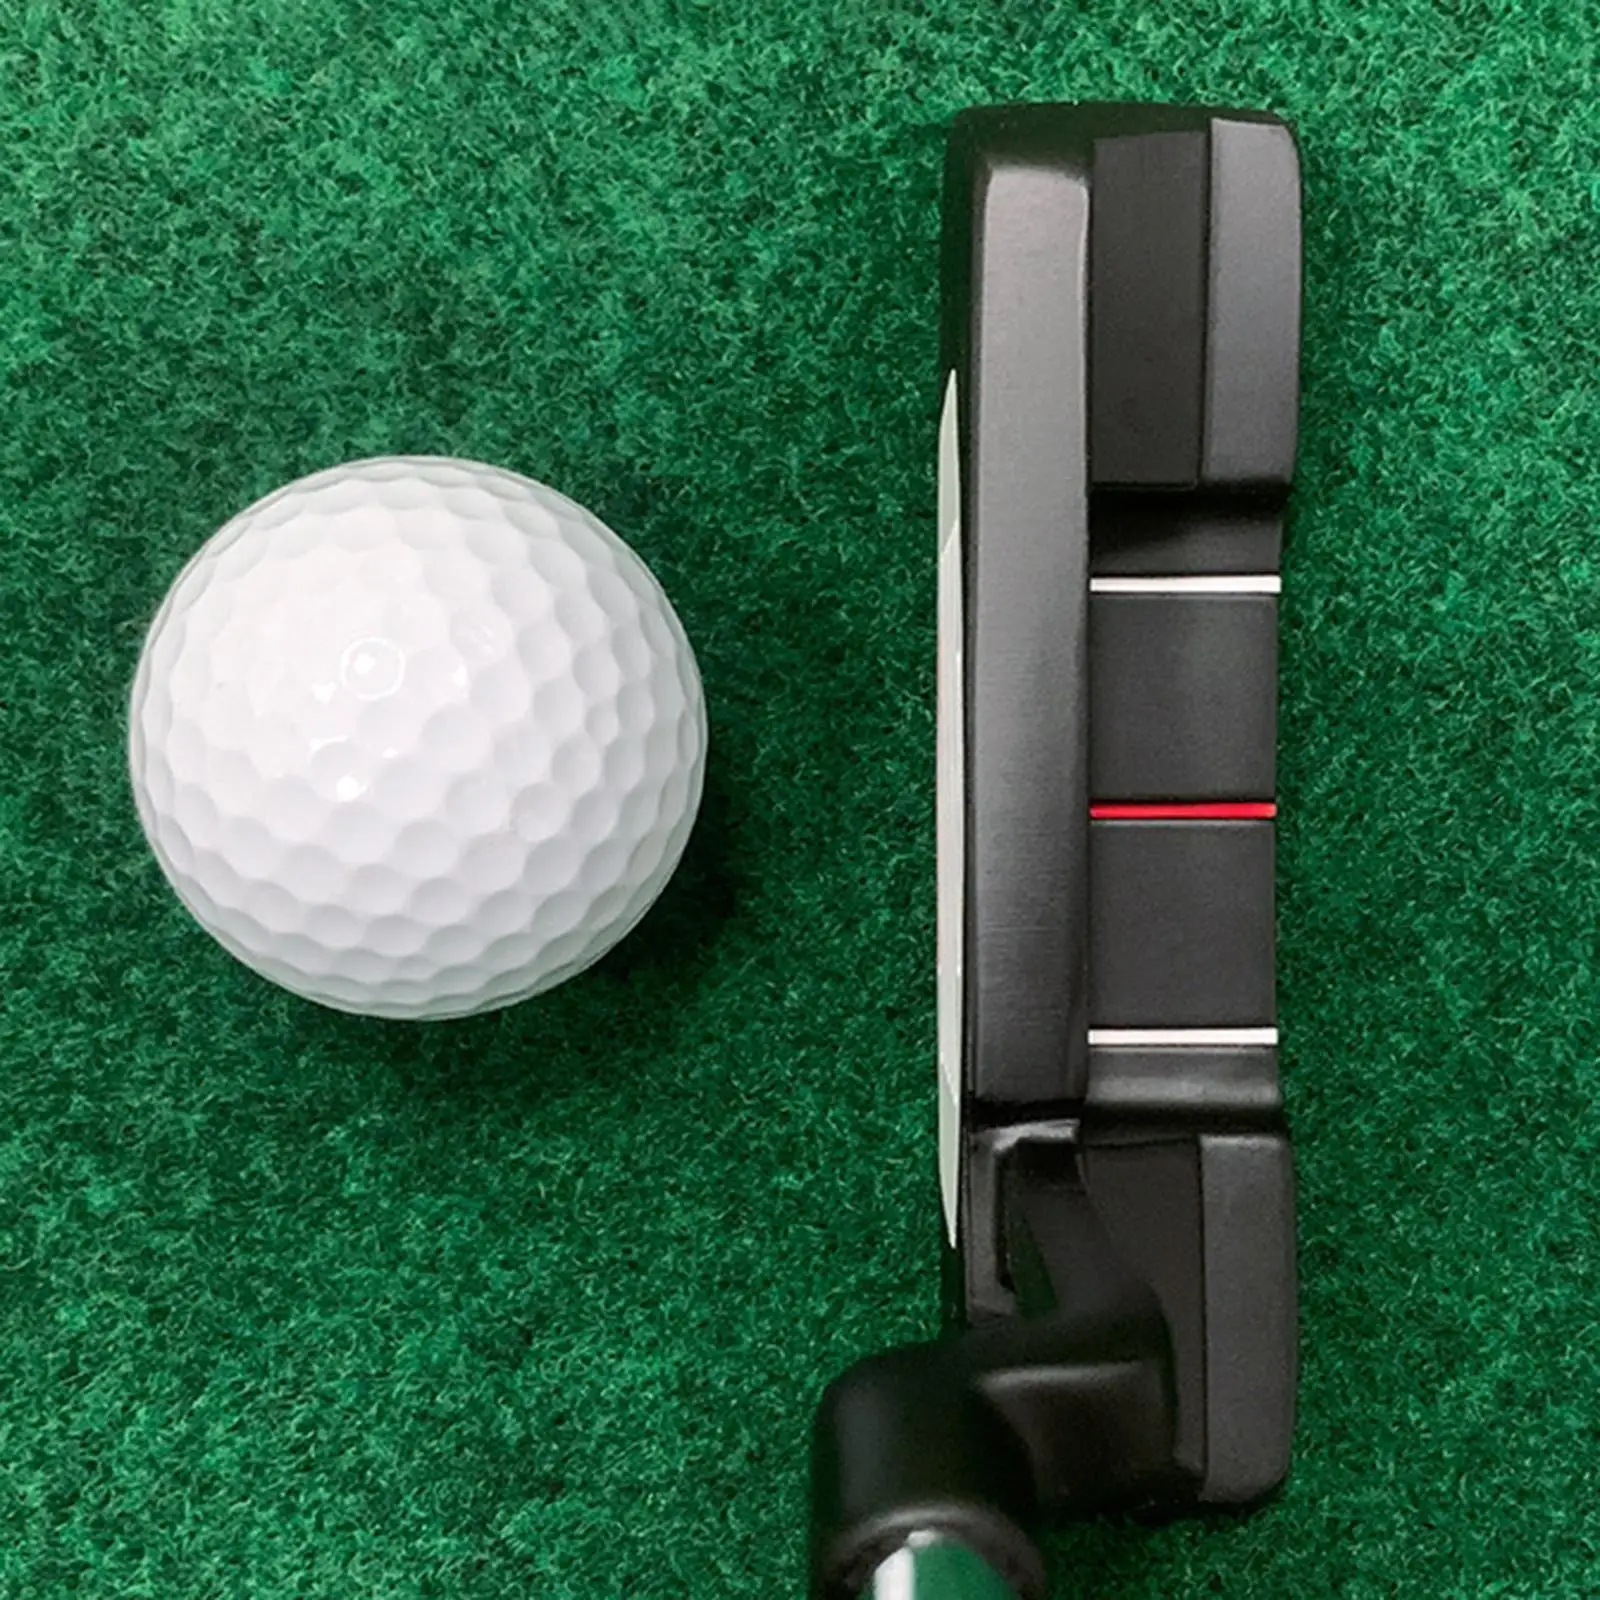 

Клюшка для гольфа для правшей, гольфистов 36 дюймов для взрослых, классический дизайн с желобом, учебный инструмент для игры в гольф, Нескользящий Захват